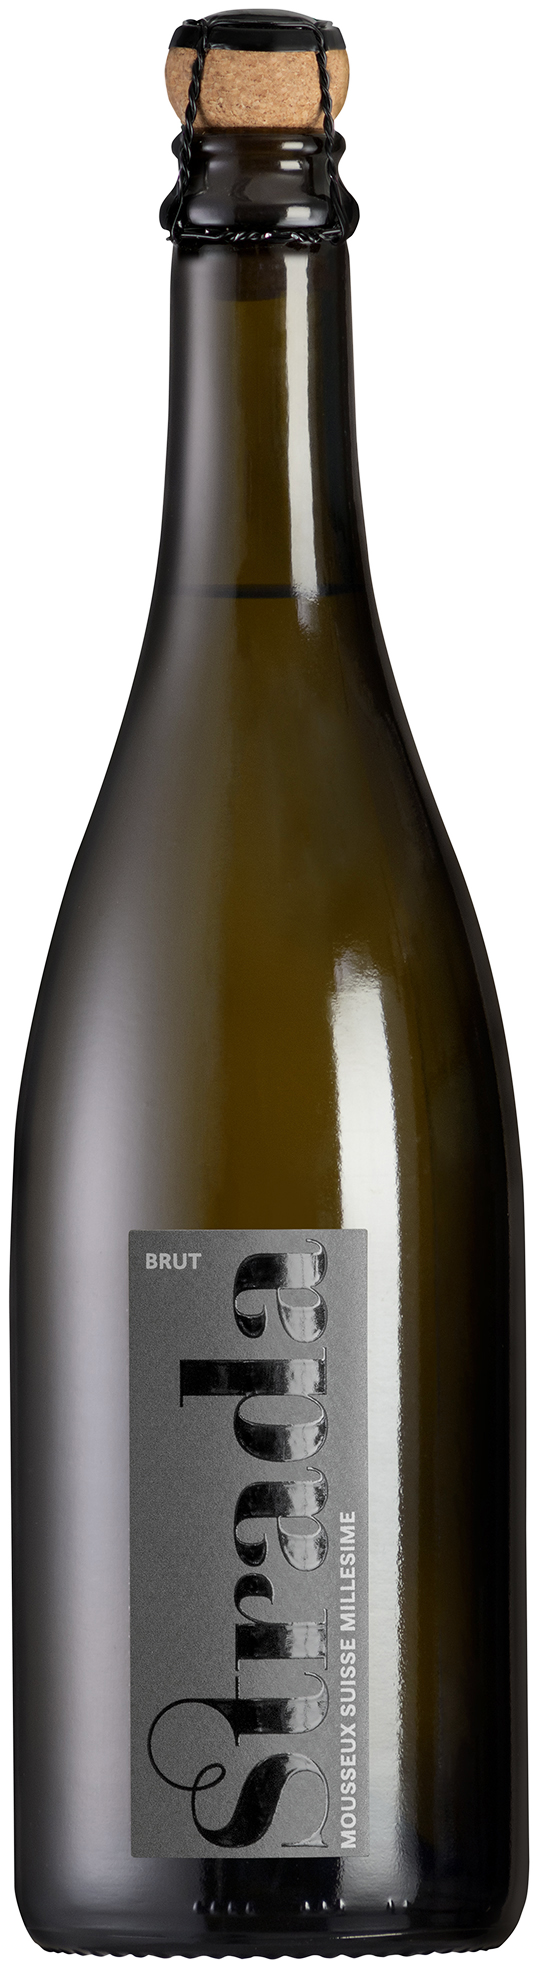 Der preisgekrönte schweizer Schaumwein aus Hallau der Rimuss & Strada Wein AG ist der Strada Brut. Passend für jeden Apéro.